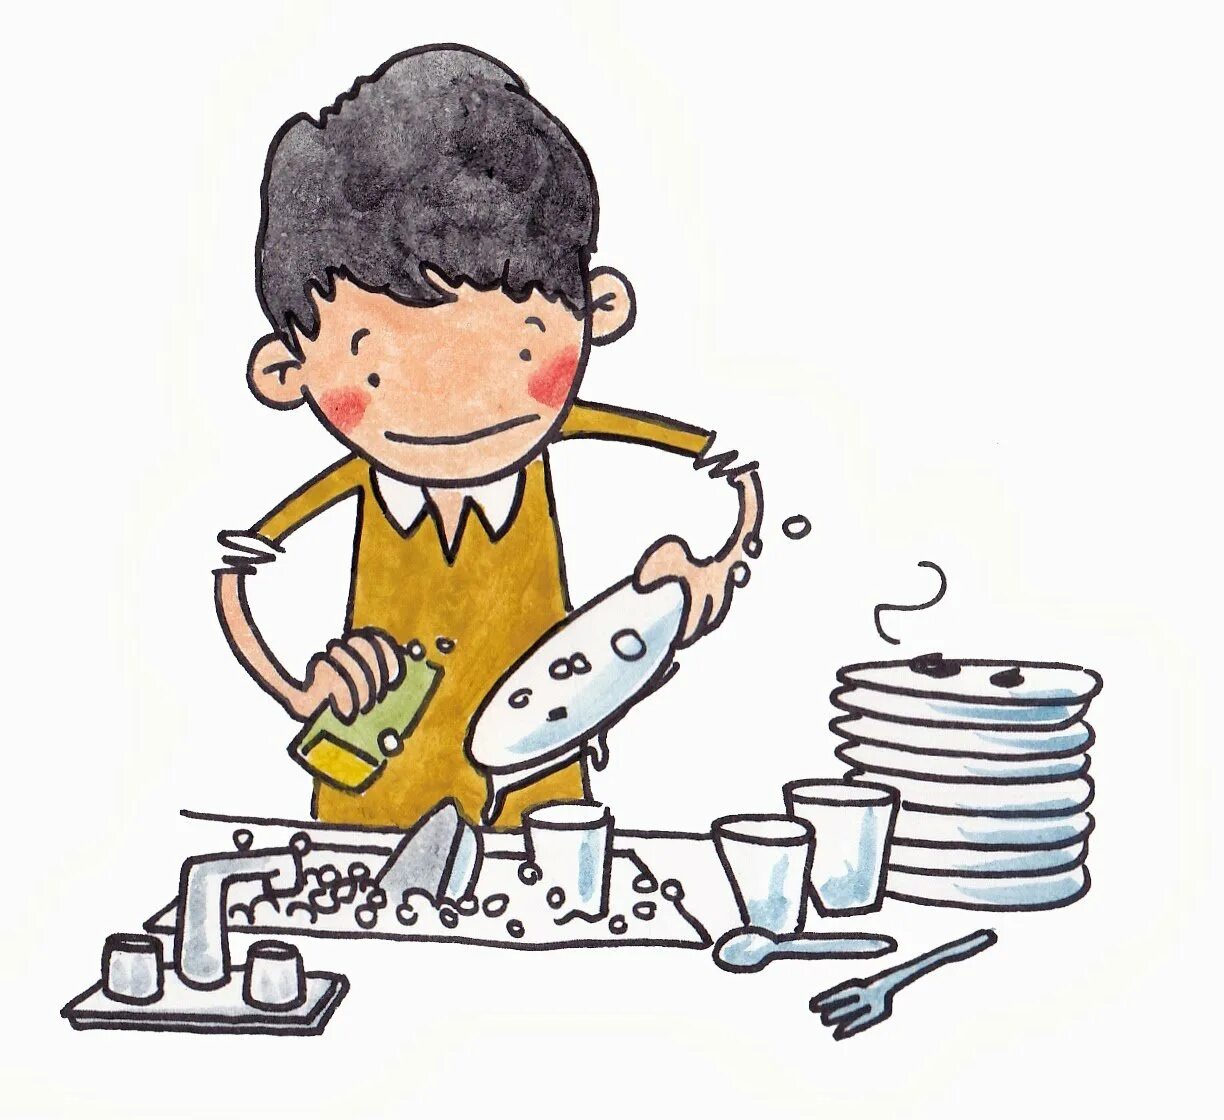 Мытье посуды. Рисунок ребенка моющего посуду. Мытье посуды иллюстрации для детей. Мытье посуды рисунок. He to wash dishes